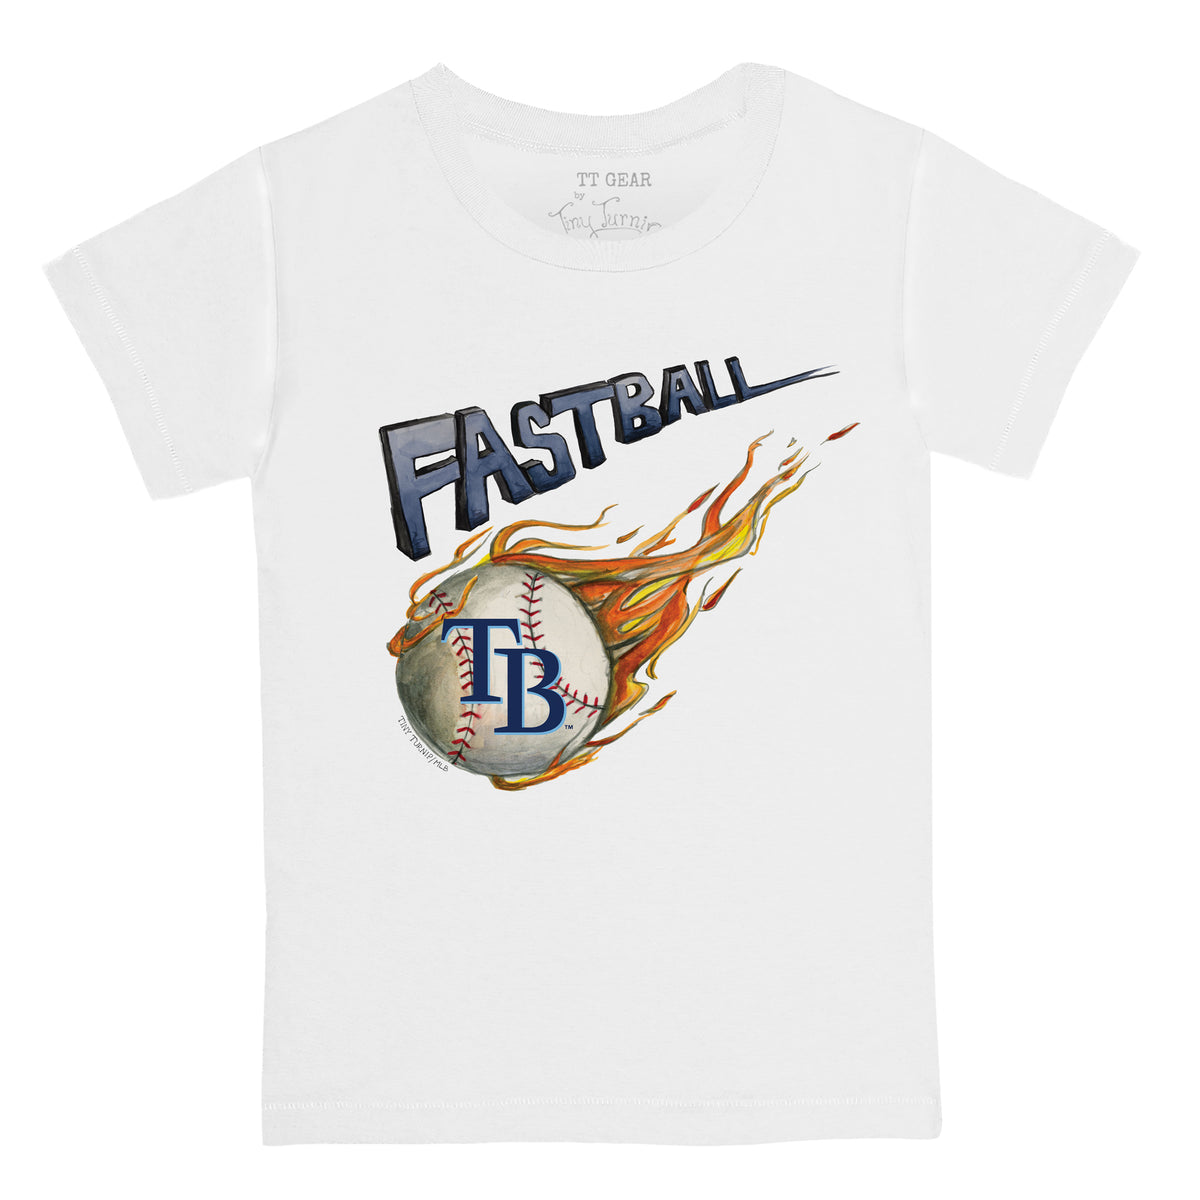 Tampa Bay Rays Fastball Tee Shirt